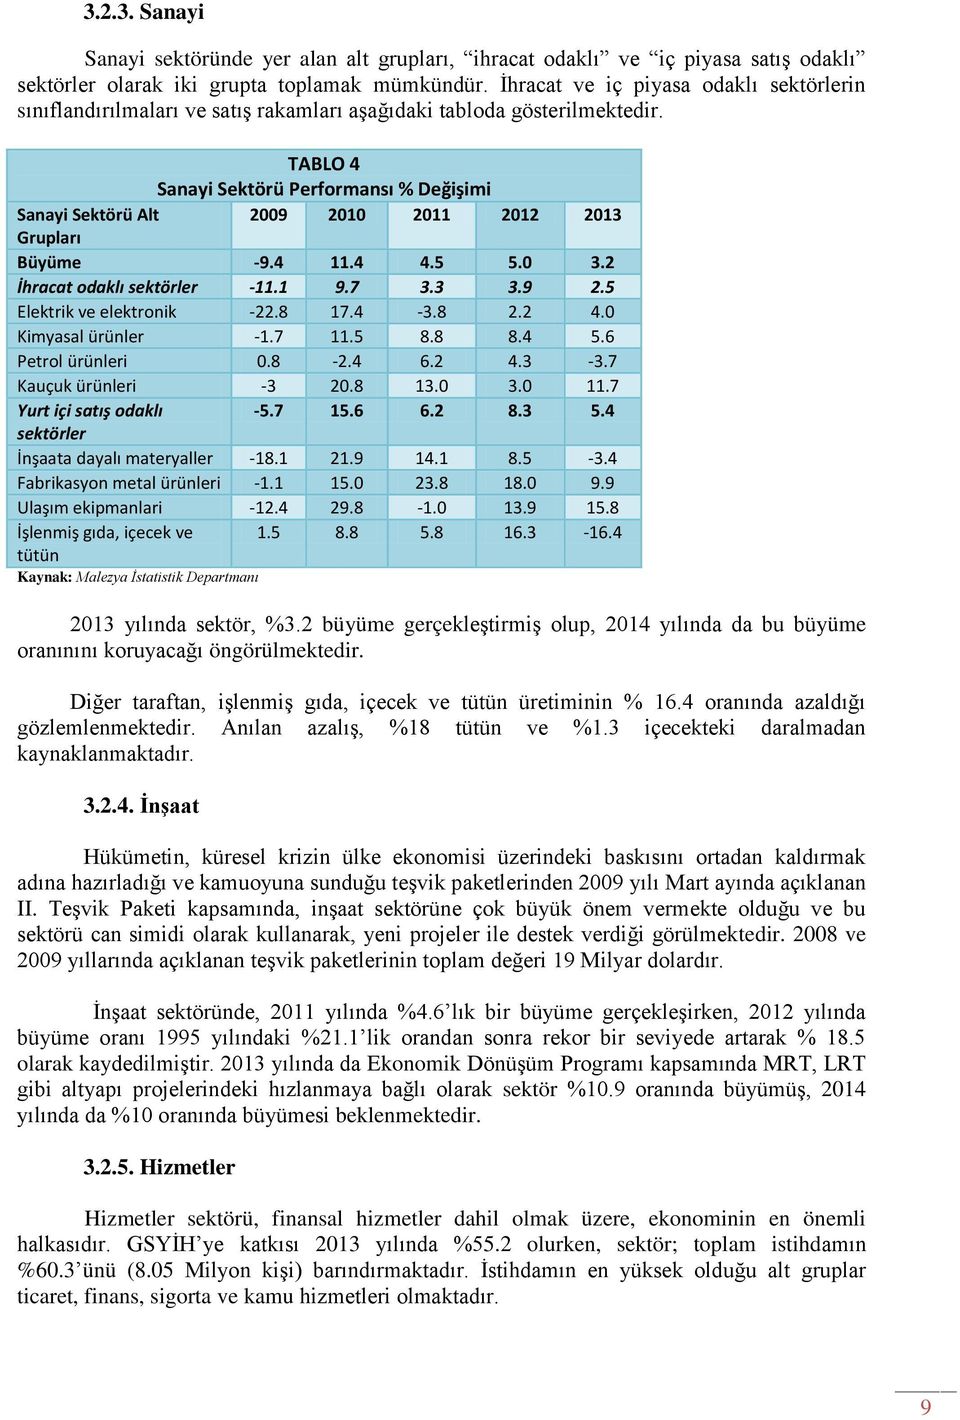 TABLO 4 Sanayi Sektörü Performansı % Değişimi Sanayi Sektörü Alt 2009 2010 2011 2012 2013 Grupları Büyüme -9.4 11.4 4.5 5.0 3.2 İhracat odaklı sektörler -11.1 9.7 3.3 3.9 2.5 Elektrik ve elektronik -22.